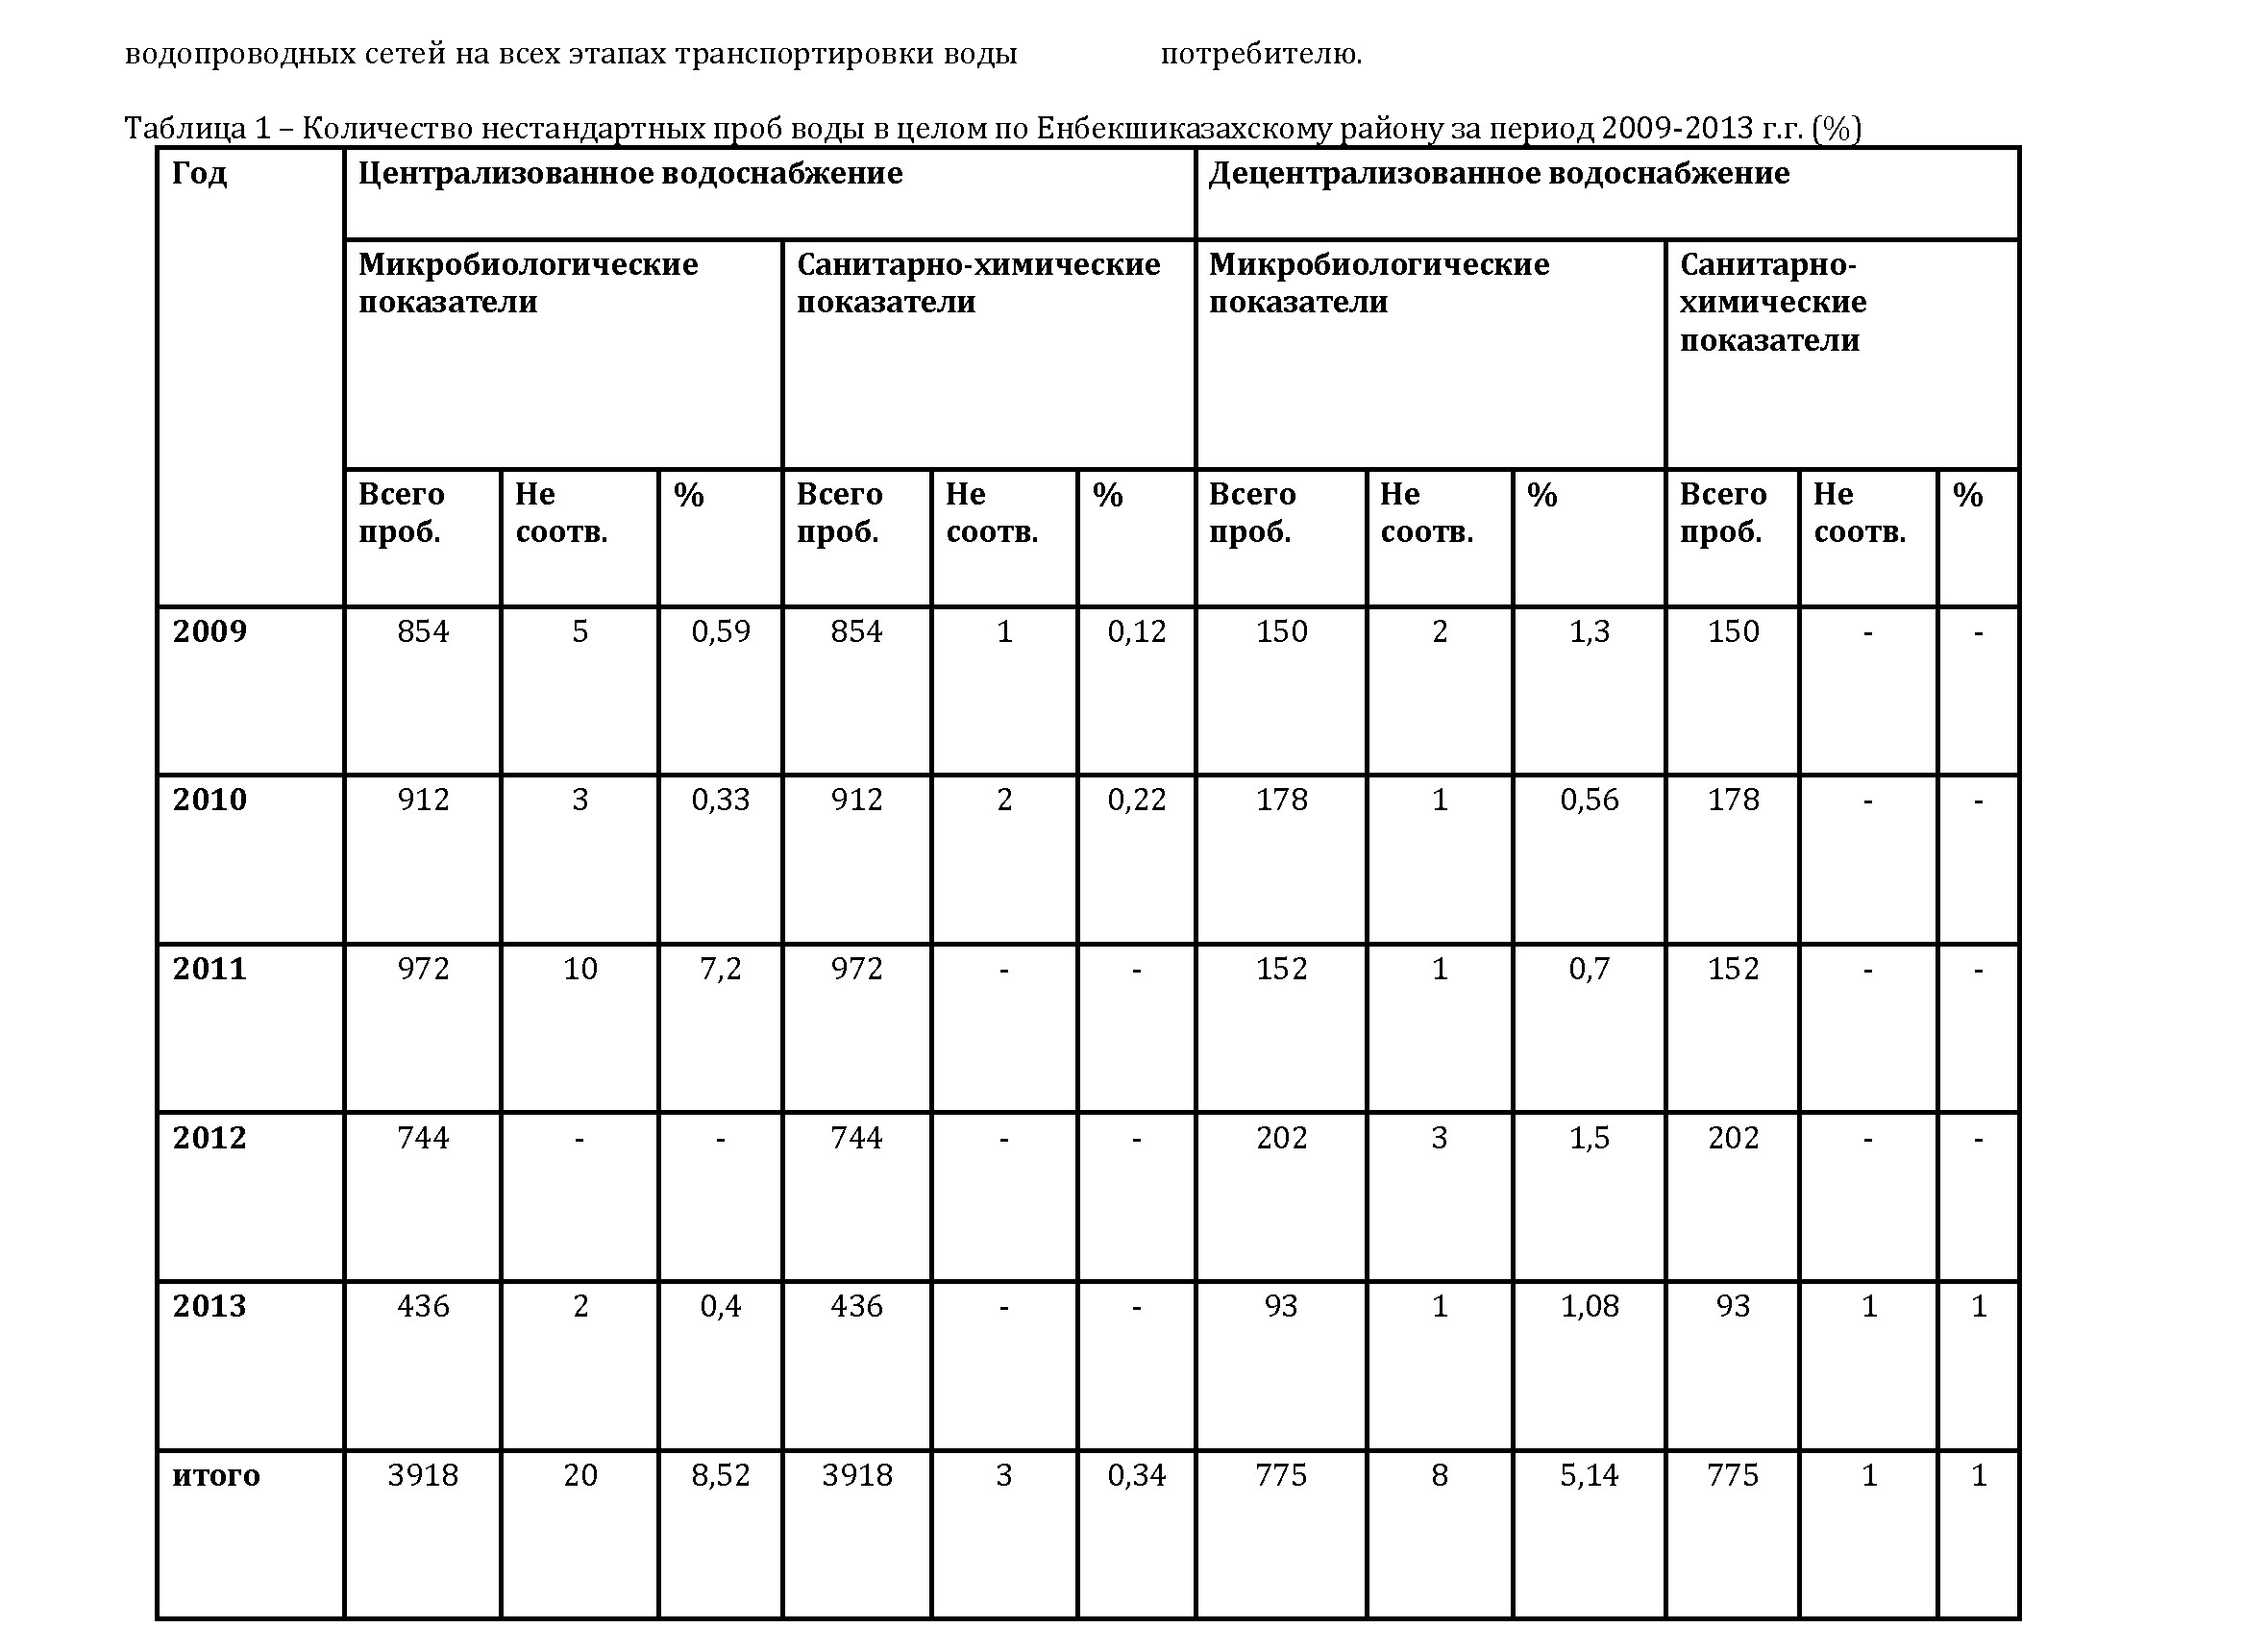 Гигиеническая оценка качества сельского водоснабжения по результатам лабораторных данных Енбекшиказахского района